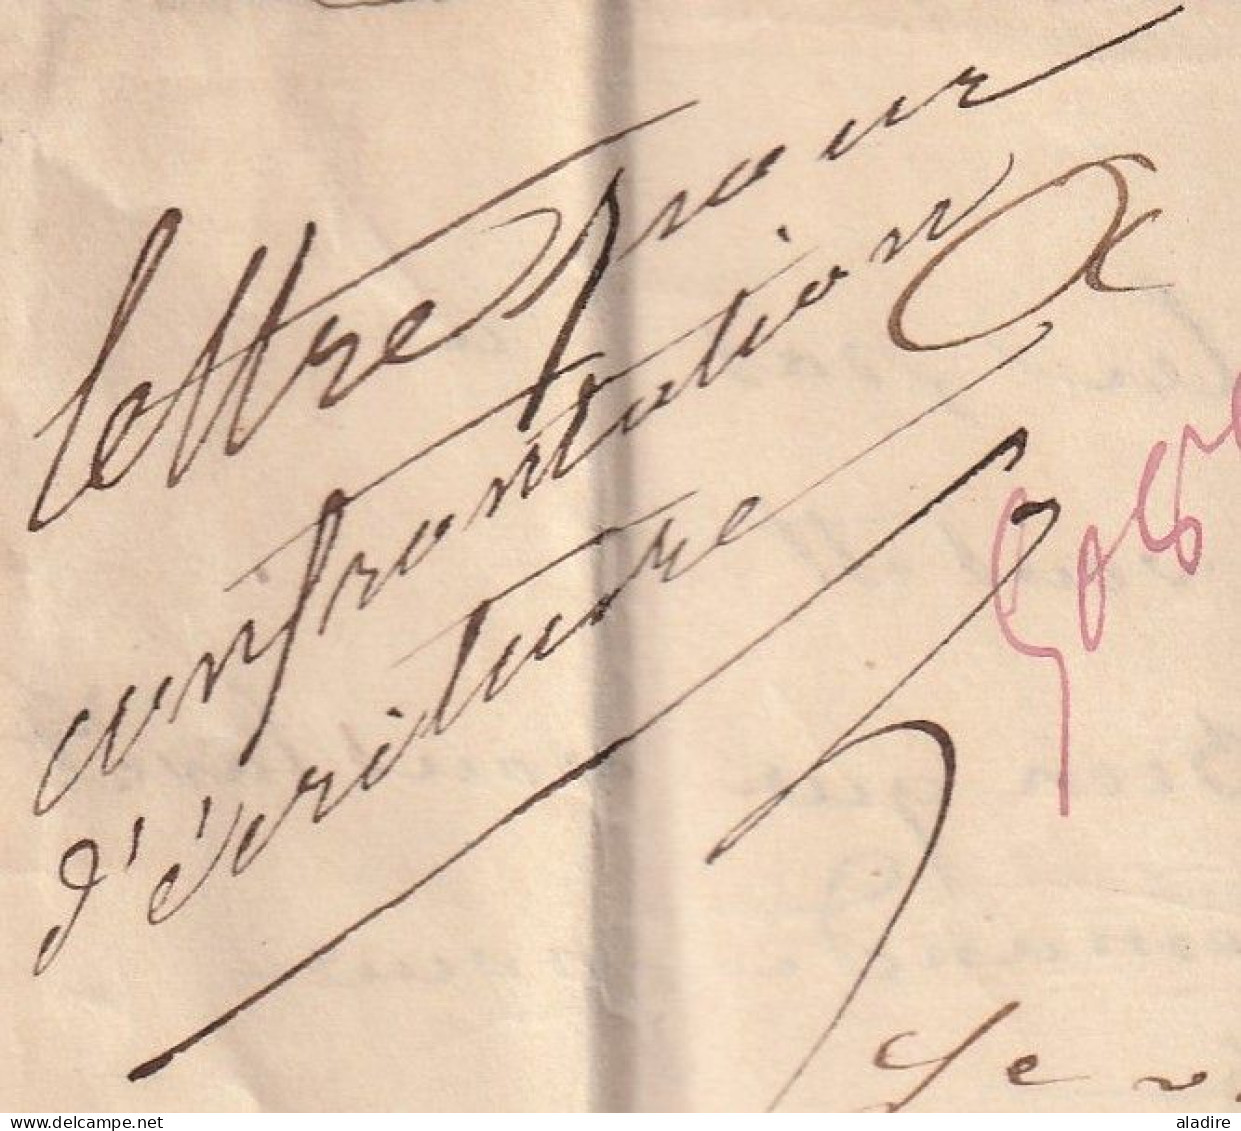 1847 - lettre pliée avec correspondance de AUXERRE, Yonne vers Paris - cachet à date d' arrivée - taxe 4